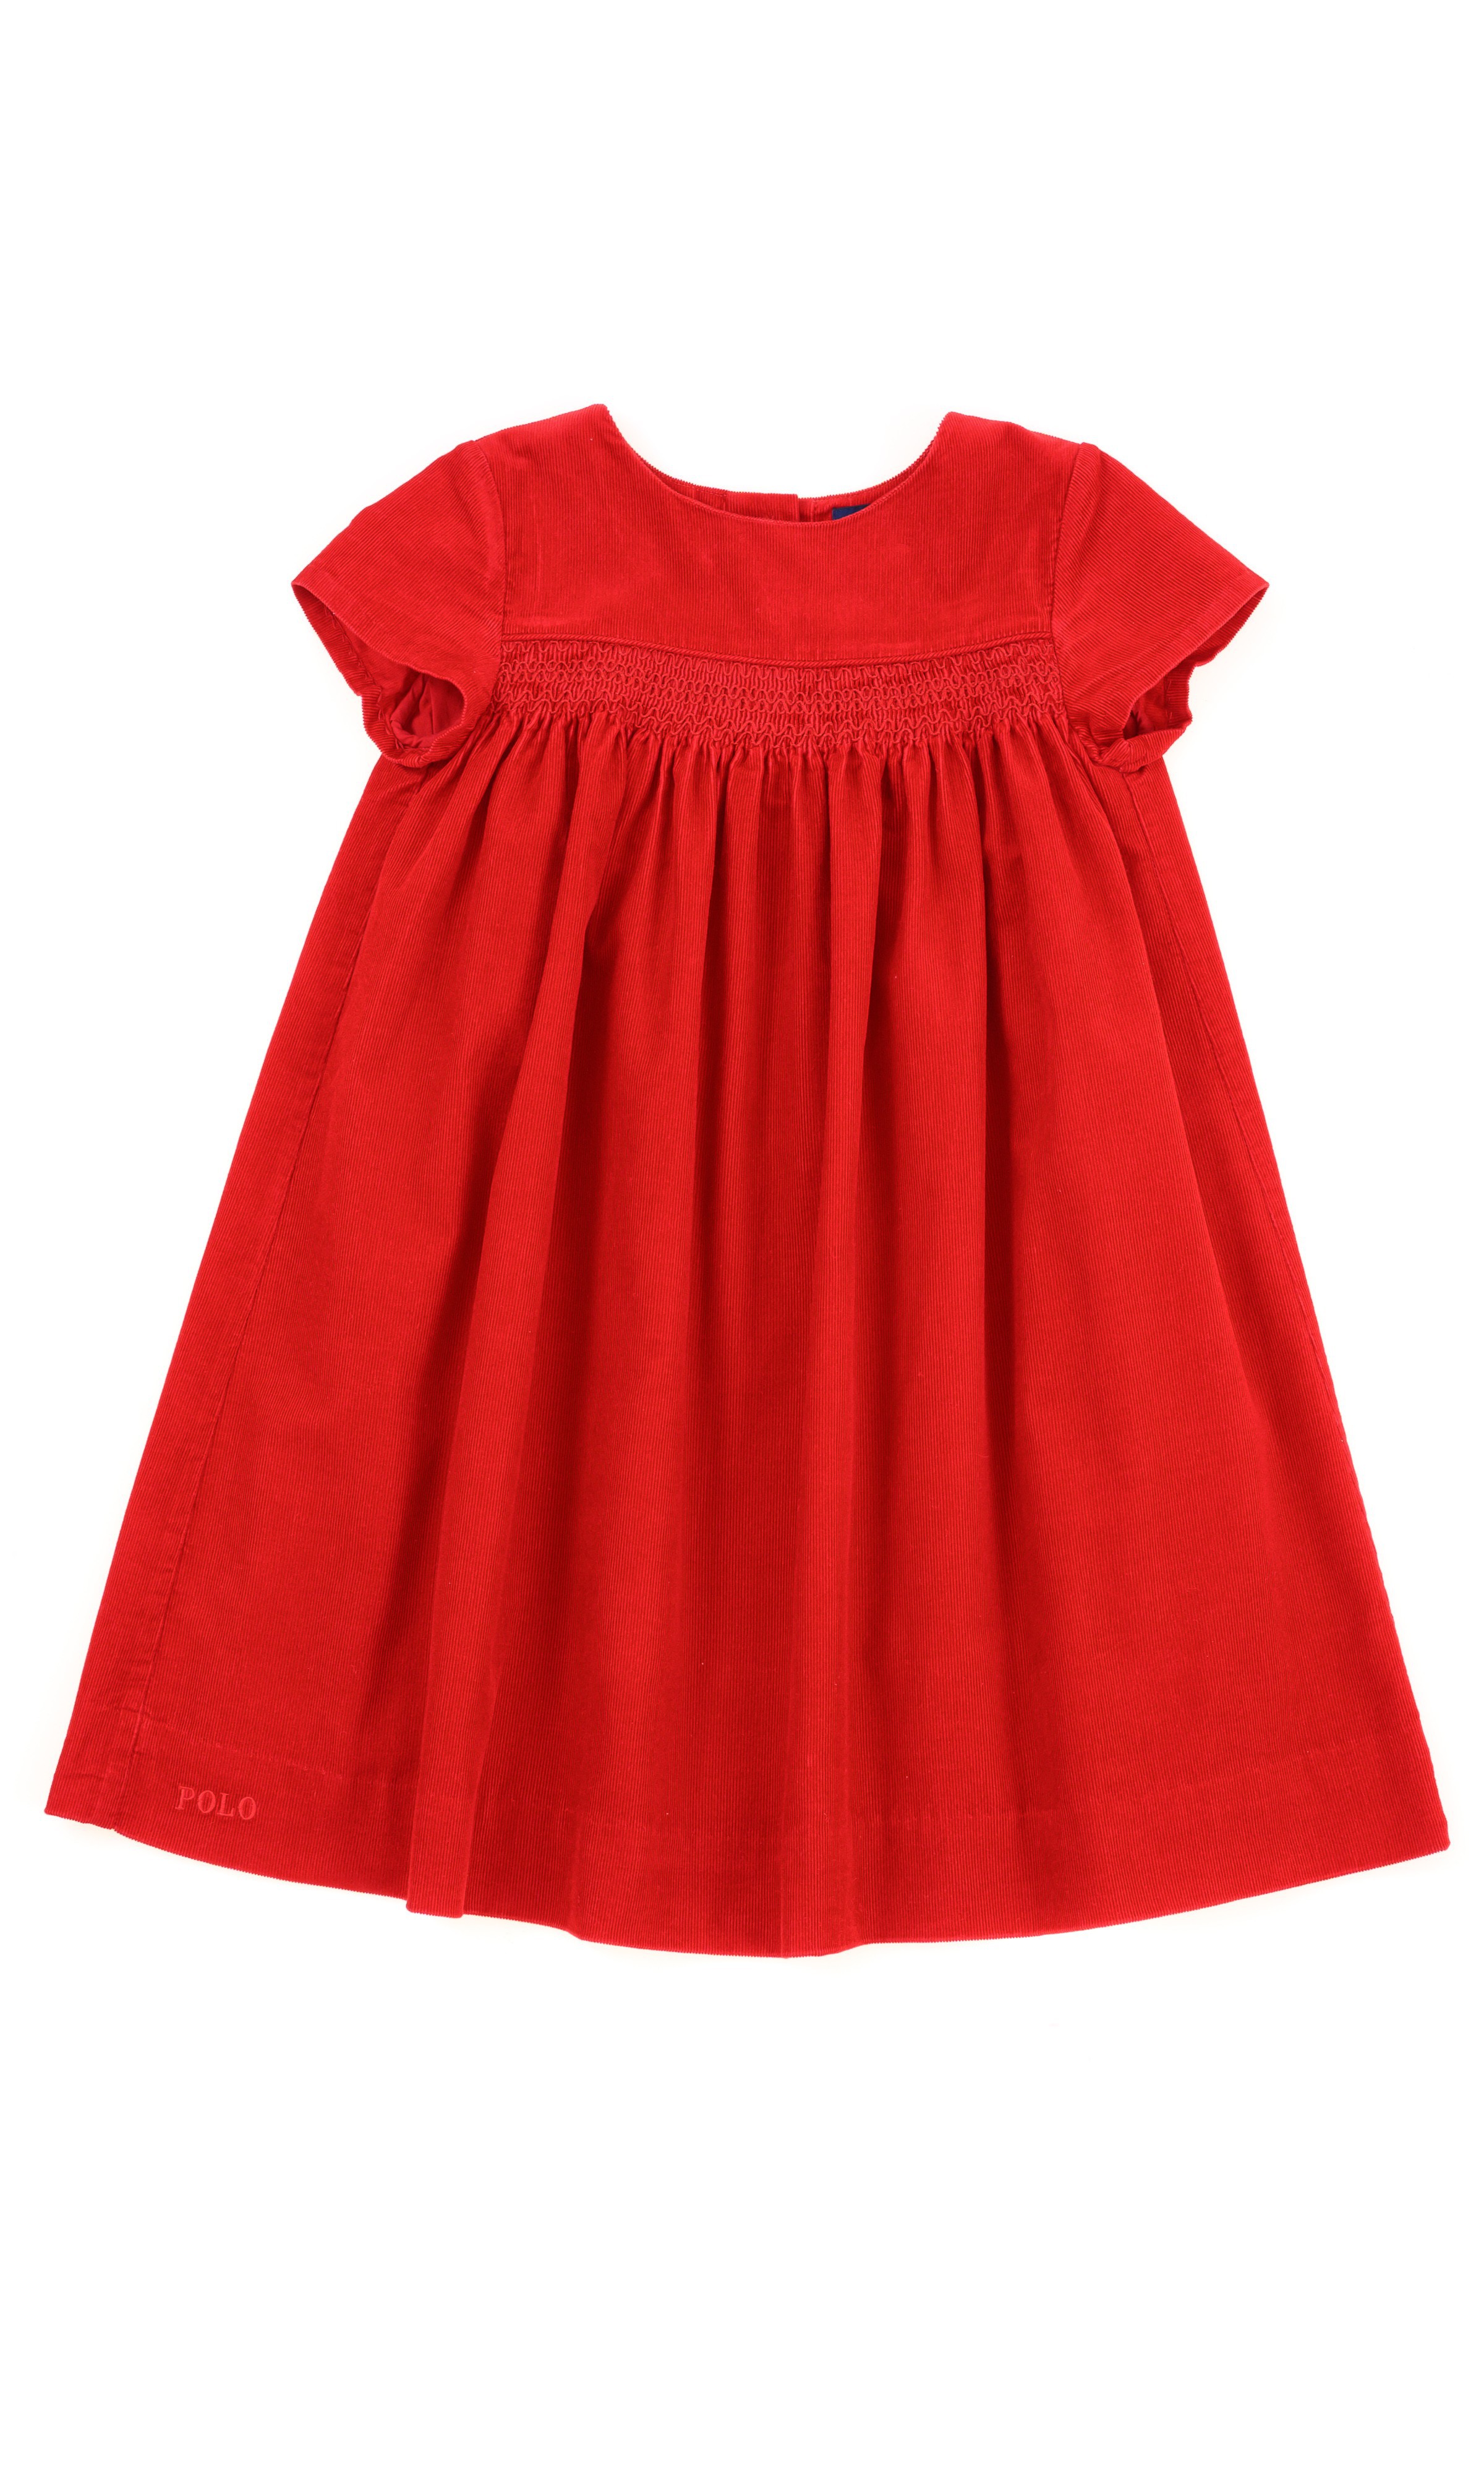 Czerwona sukienka sztruksowa na krótki rękaw, Polo Ralph Lauren -  Celebrity-Club